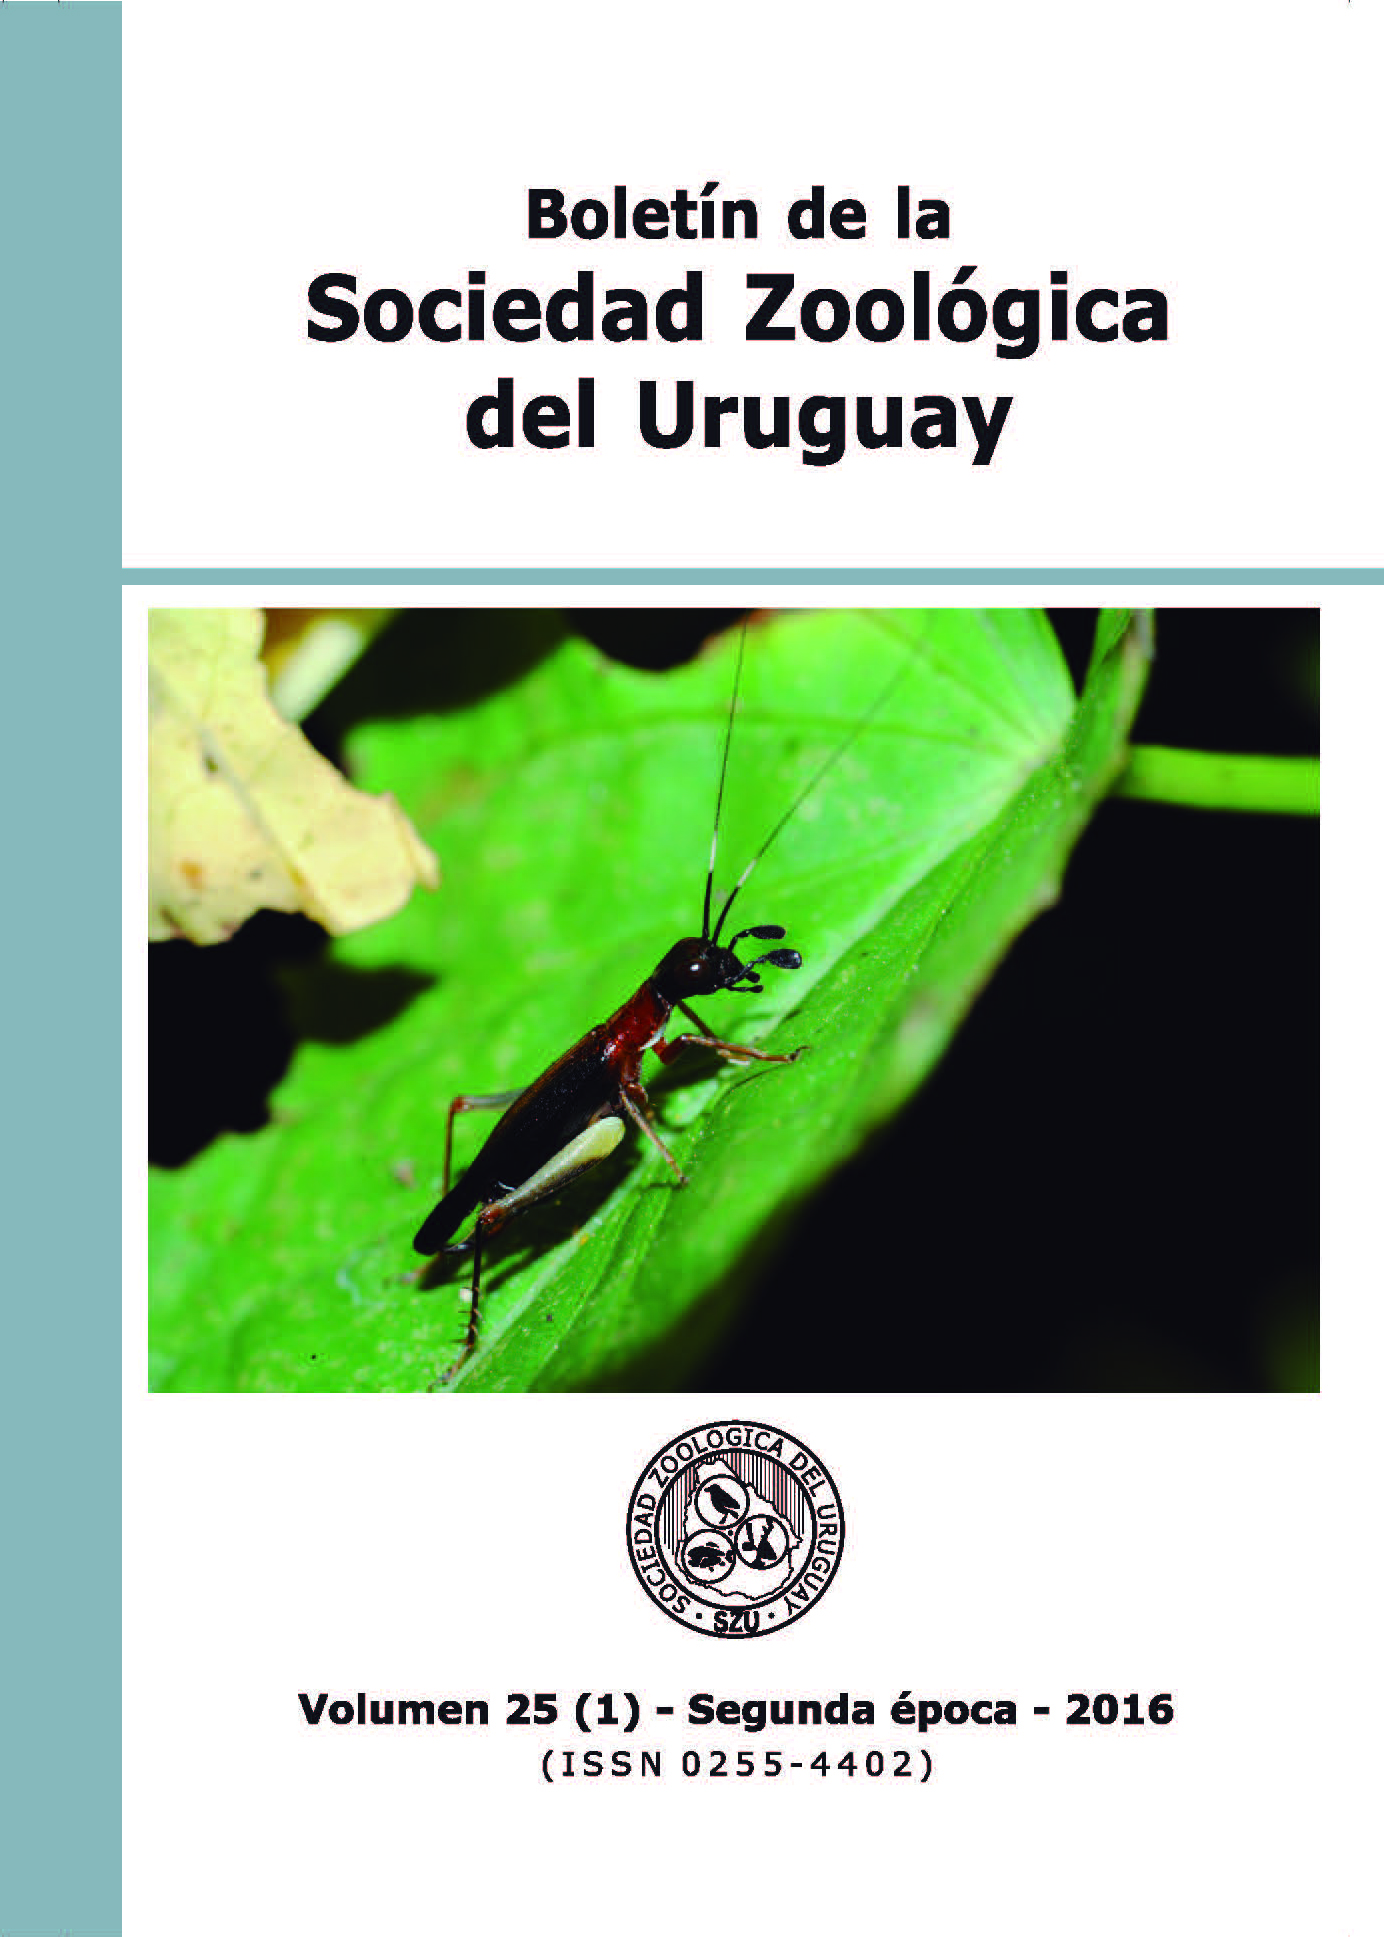 OSTEOLOGÍA CRANEAL DE Liolaemus azarae AVILA 2003 (SQUAMATA: LIOLAEMIDAE):  APORTES A LA VARIACIÓN MORFOLÓGICA DEL GÉNERO | Boletín de la Sociedad  Zoológica del Uruguay